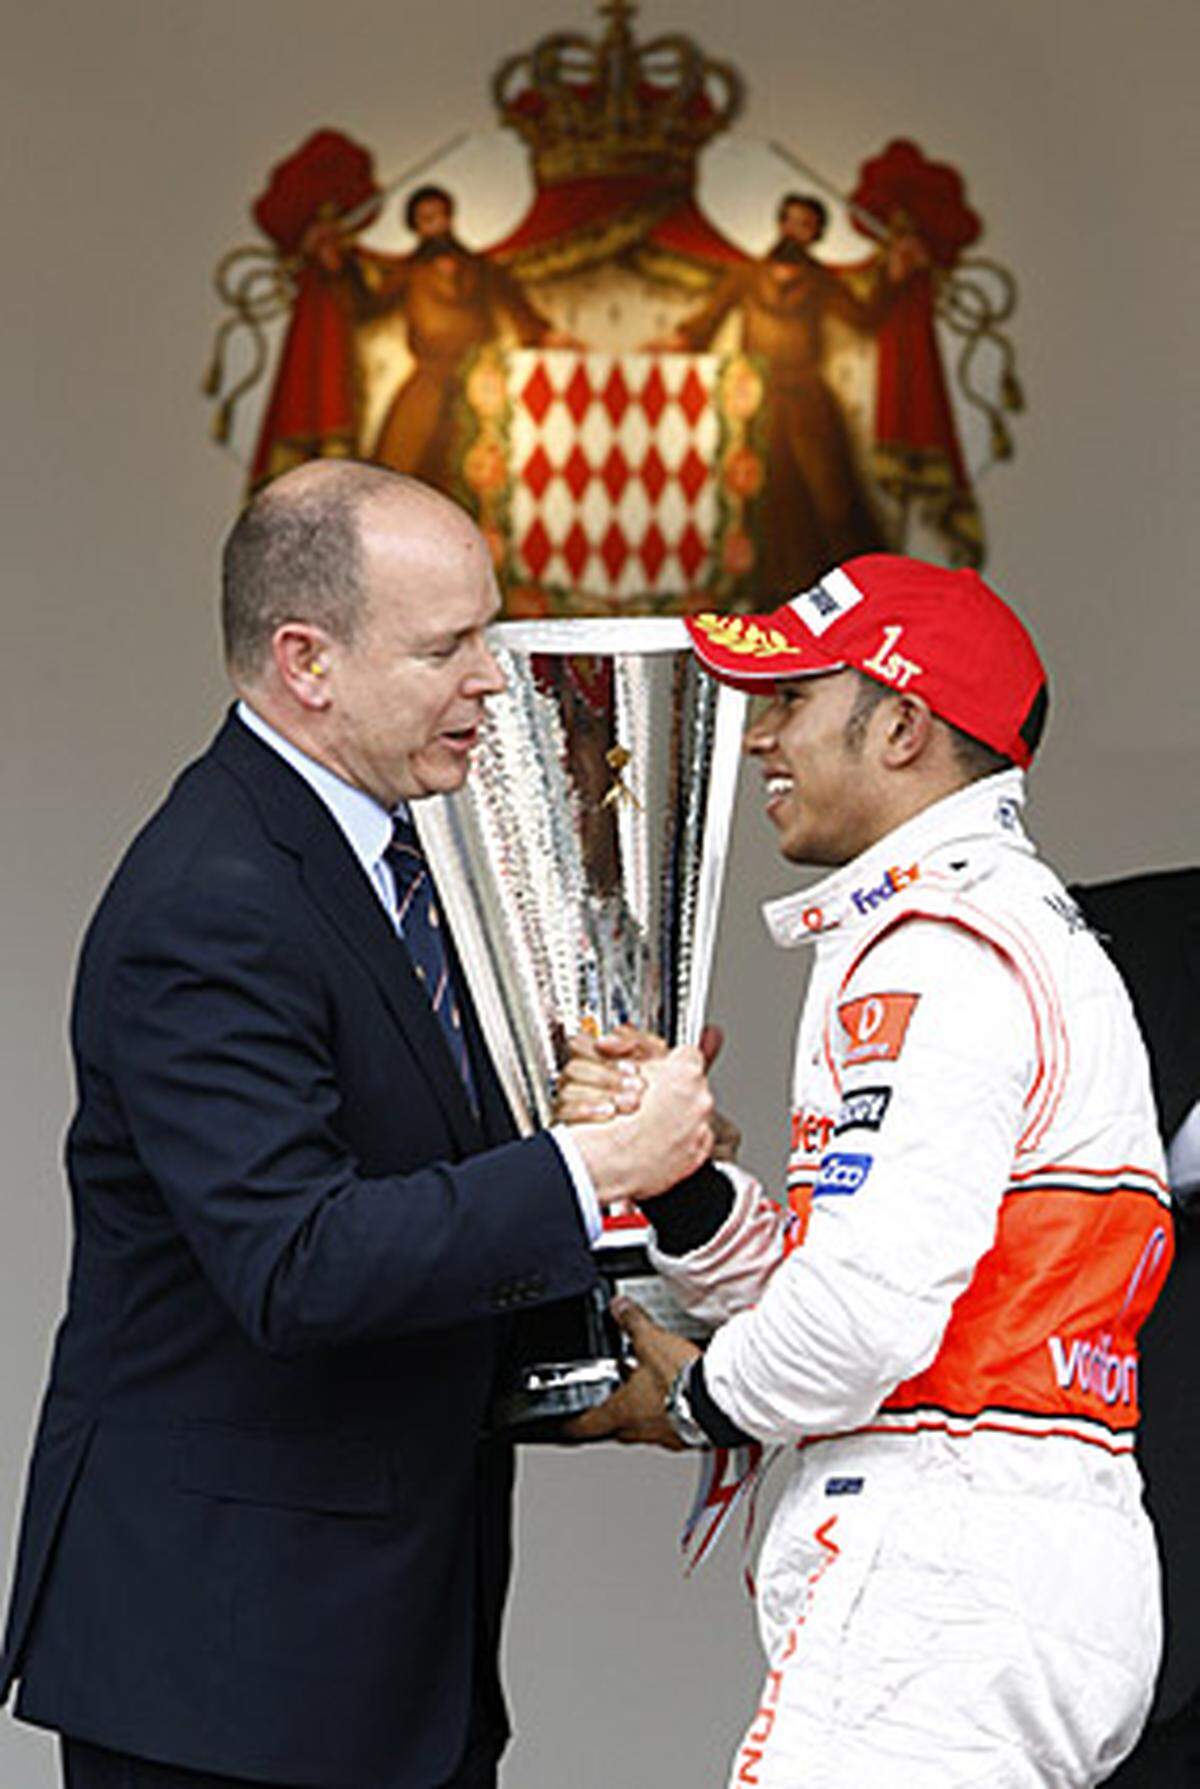 Streckenbezeichnung: Circuit de Monaco  Streckenlänge: 3,340 km  Runden: 78  Renndistanz: 260,520 km  Sieger 2008: Lewis Hamilton  Homepage: http://www.acm.mc